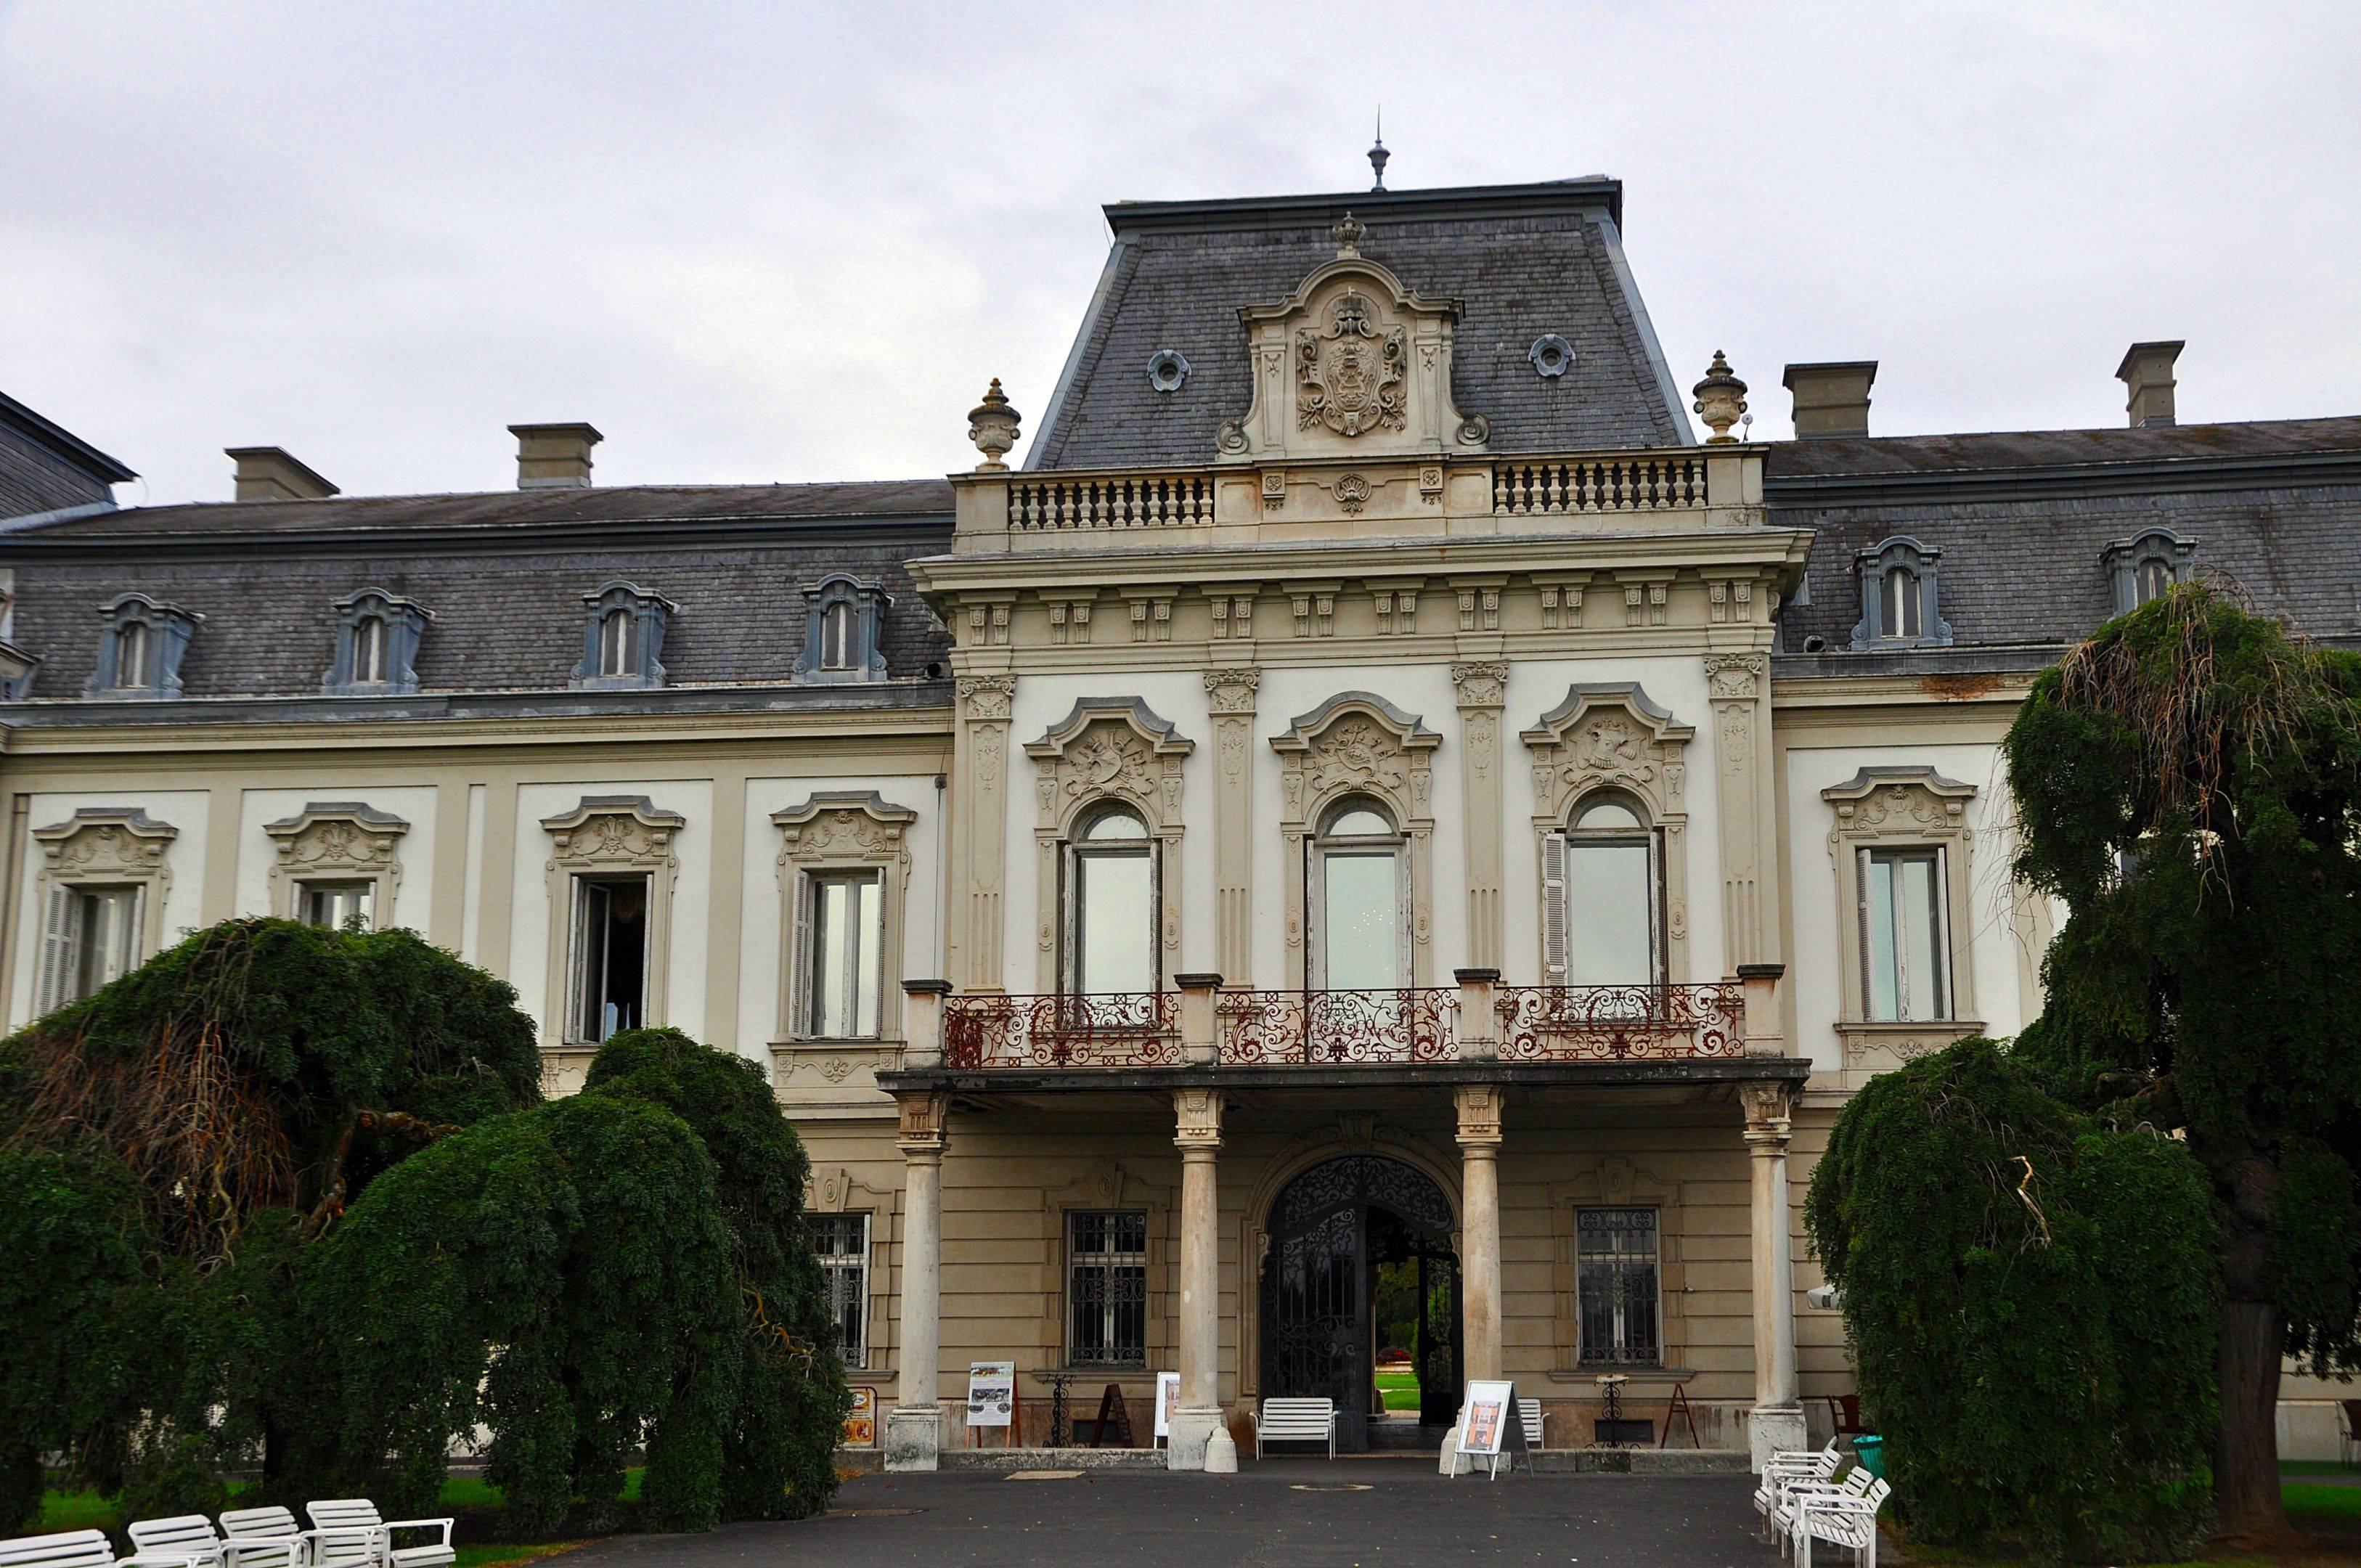 Découverte du Château des Festetics du XVIIIe siecle a Keszthely